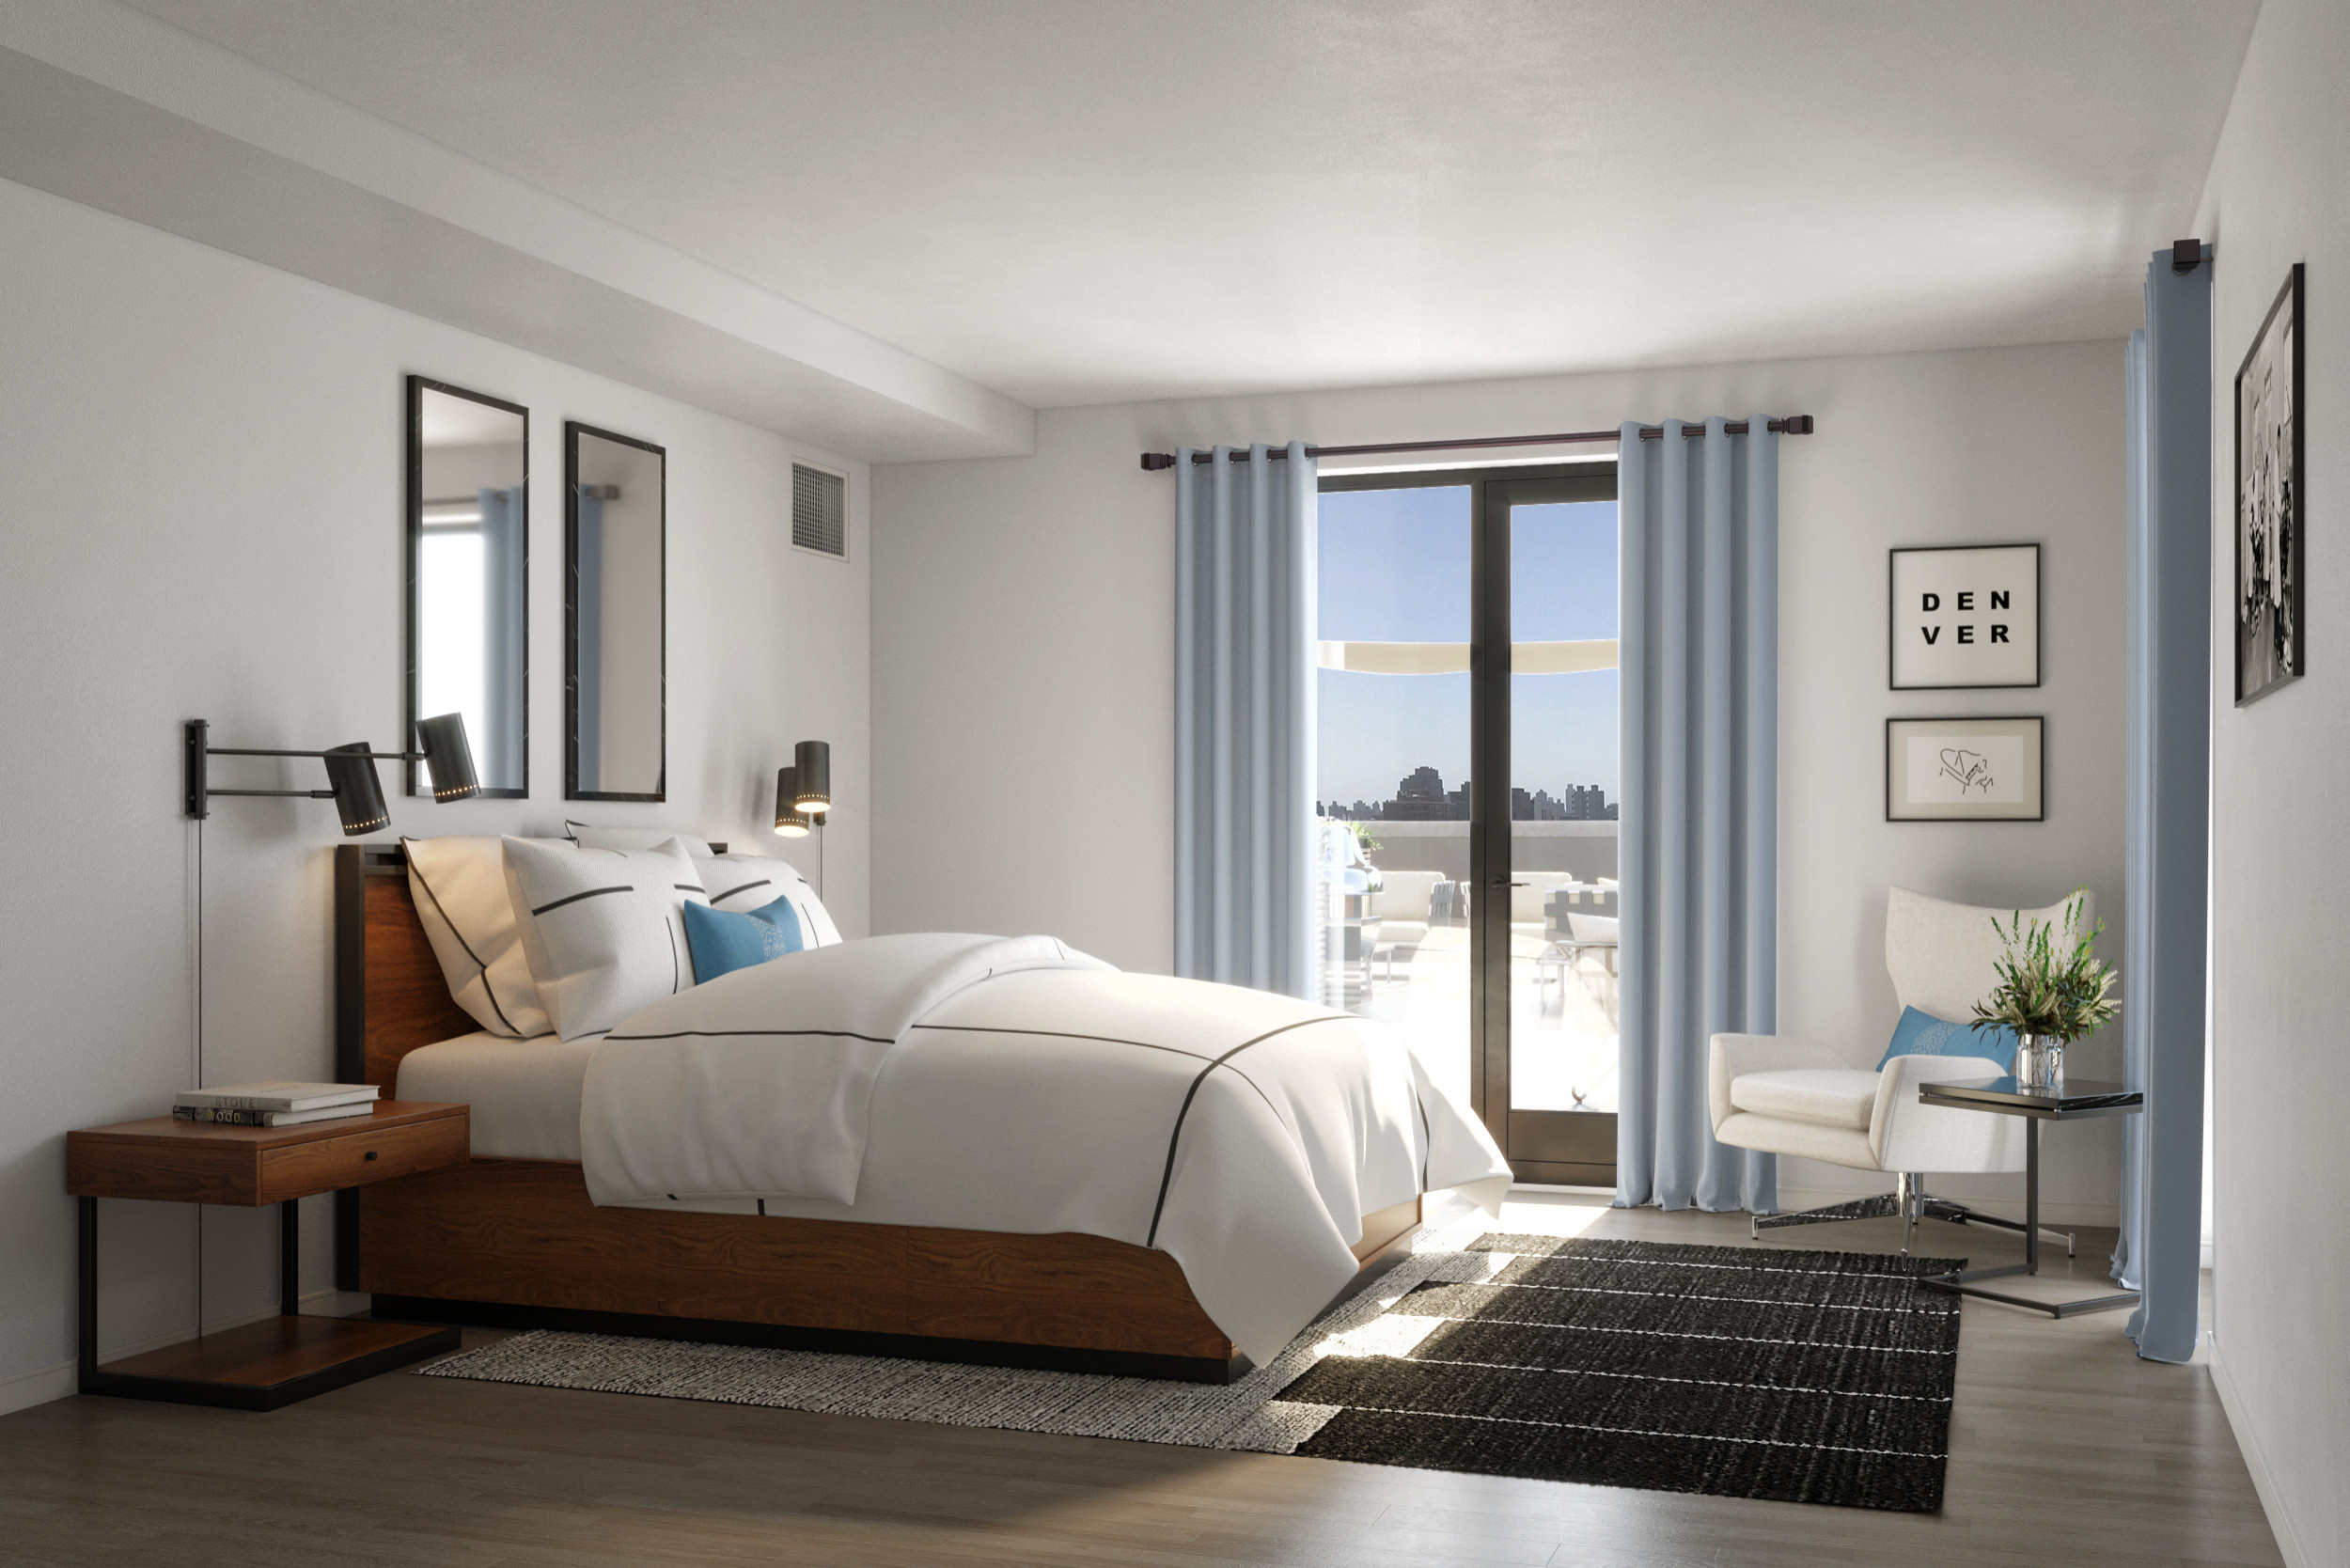 Rooftop, Living, Dining, Master Bedroom Modern Design